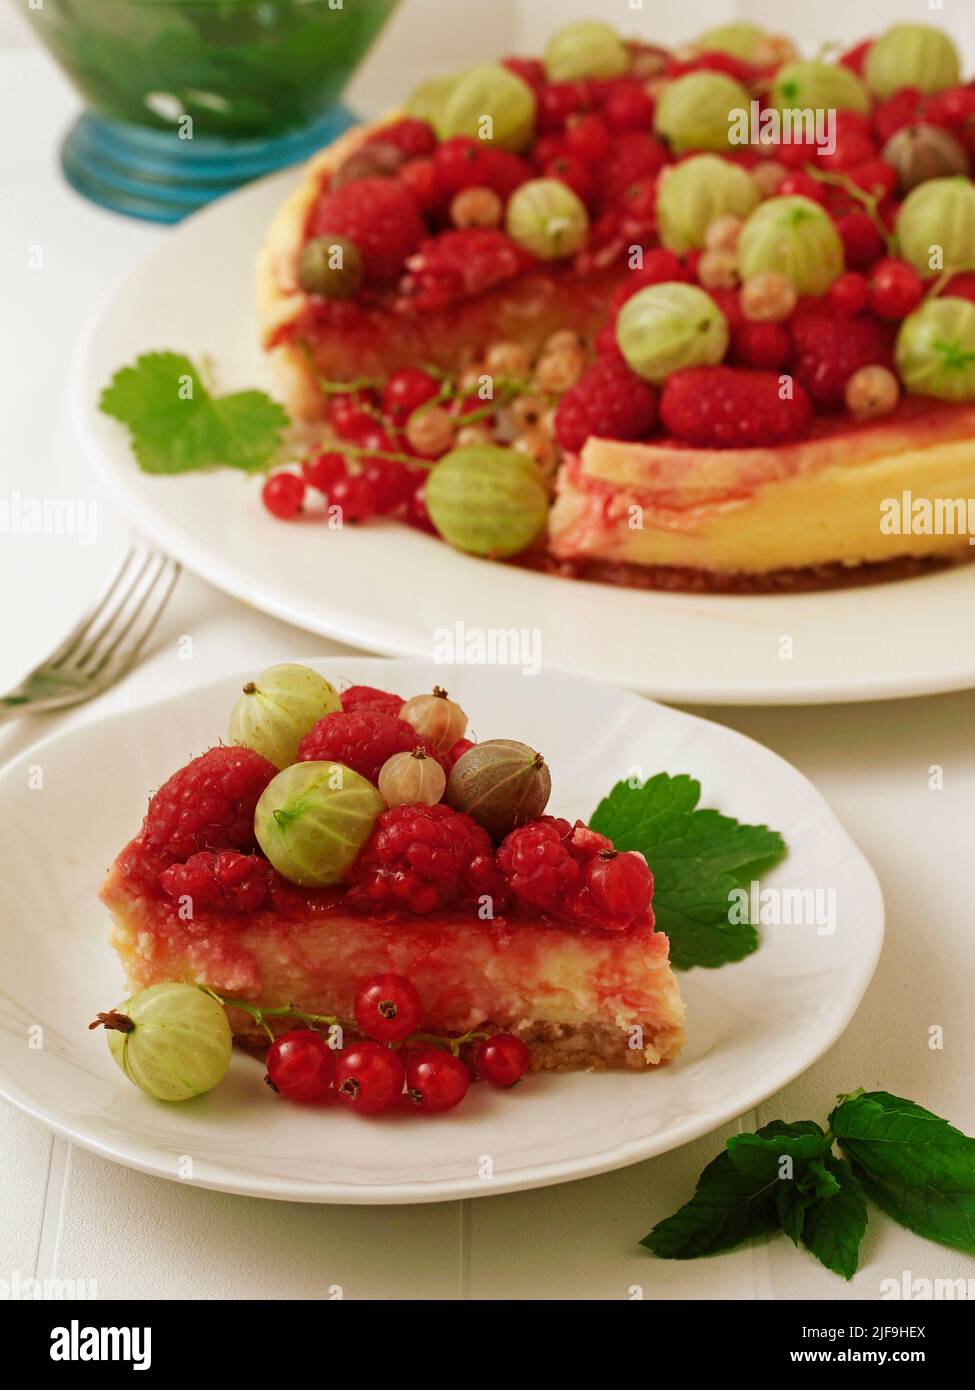 Cheese tart with berries. Stock Photo